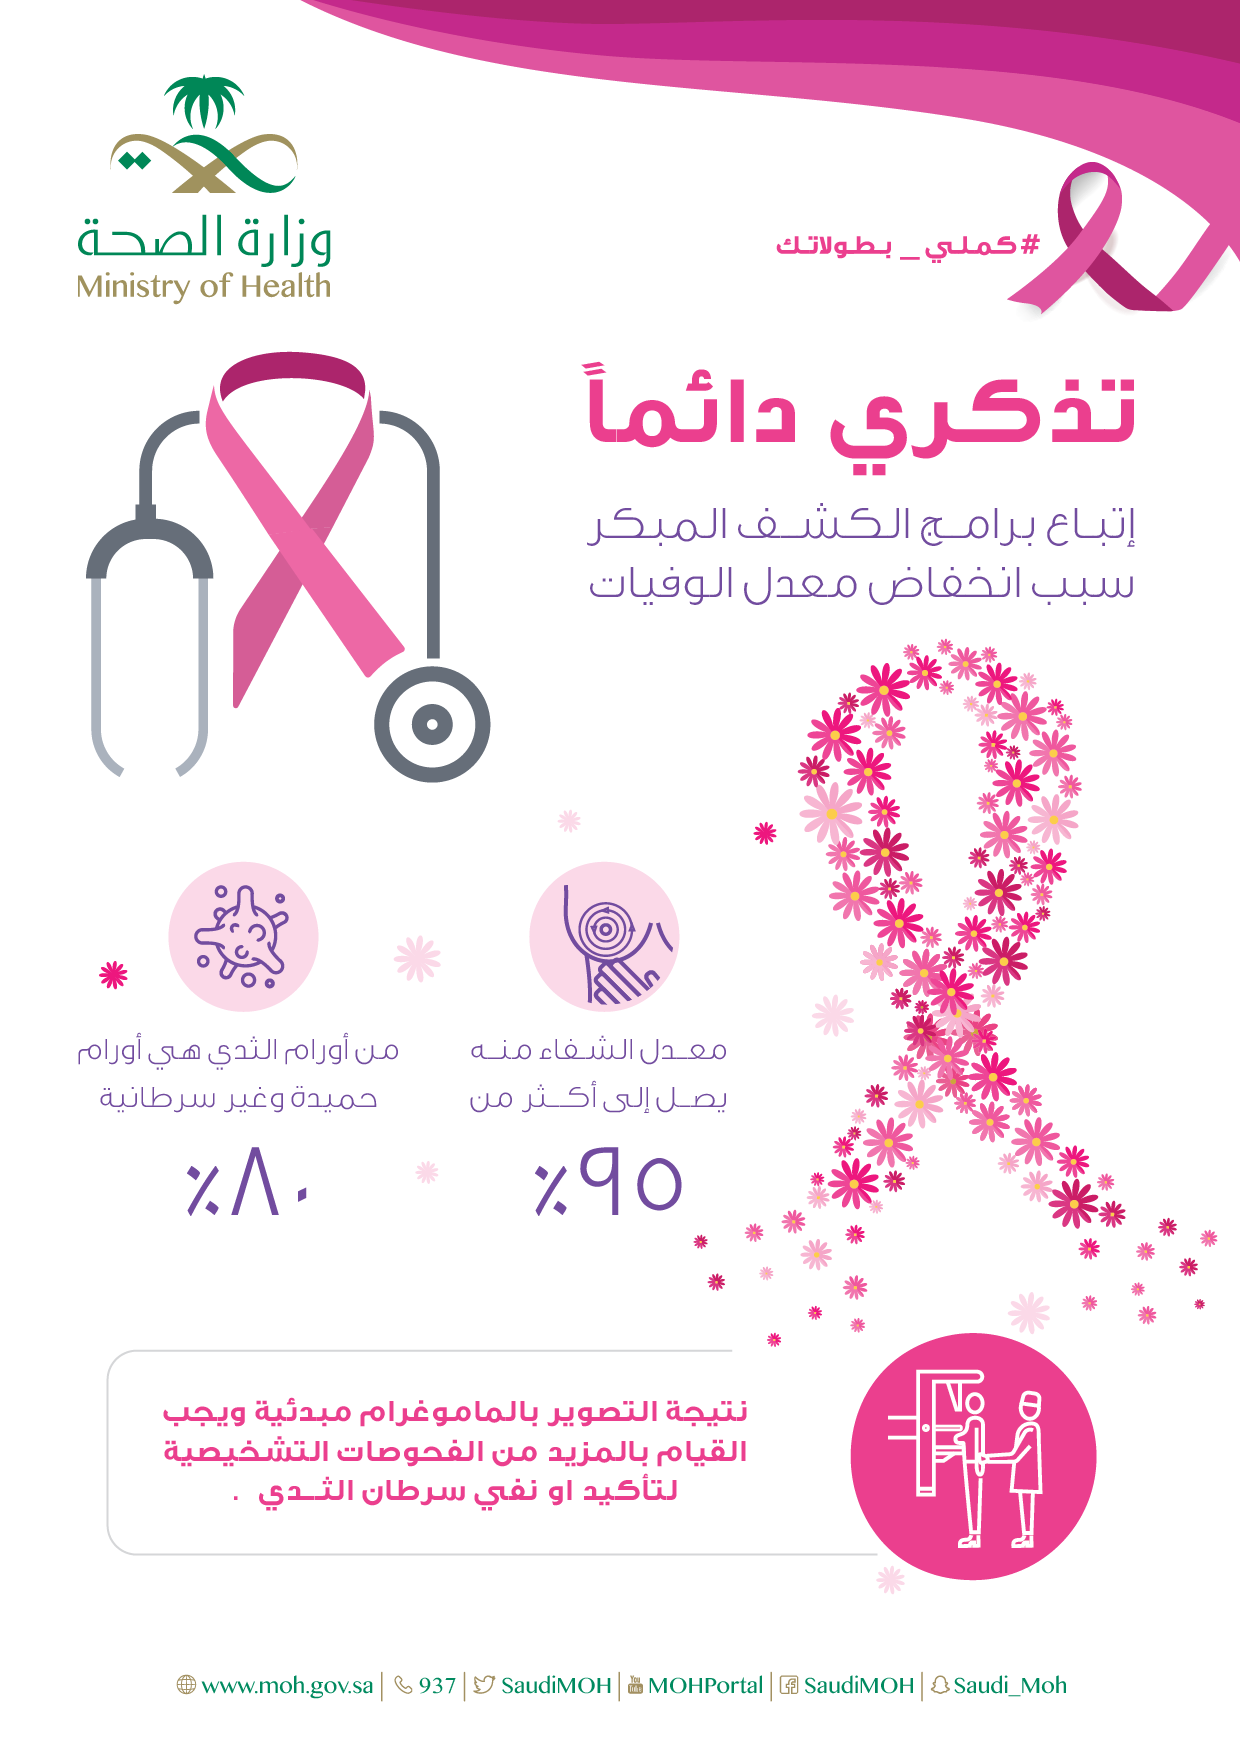 الكشف المبكر عن سرطان الثدي , اهميه الكشف المبكر لسرطان - عبارات